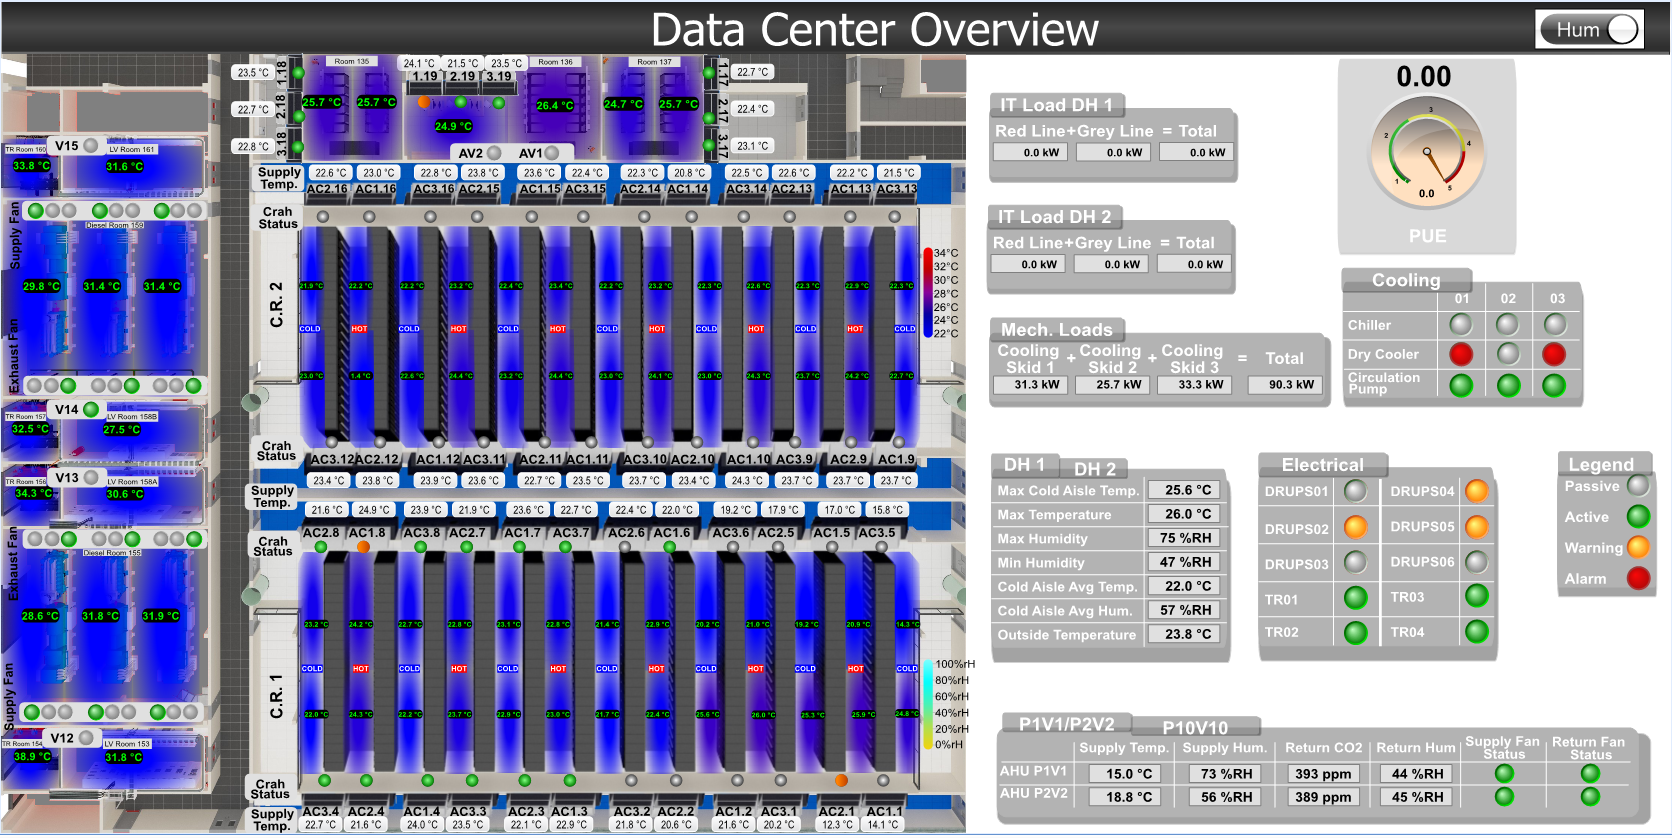 SOB - Data Center Overview